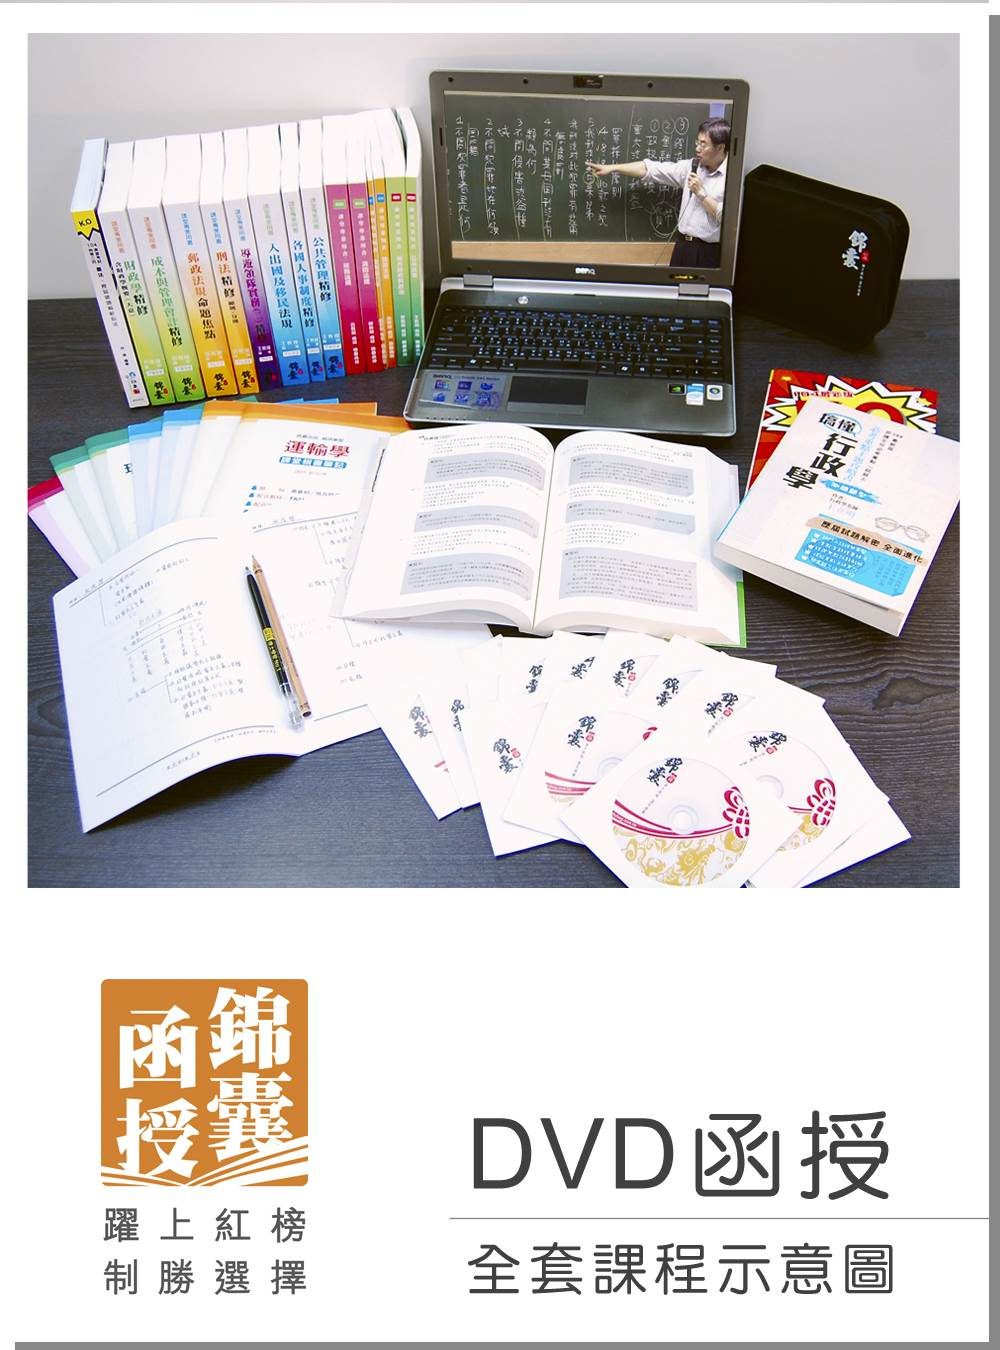 【DVD函授】105年郵局招考(專業職二-外勤)-全套課程